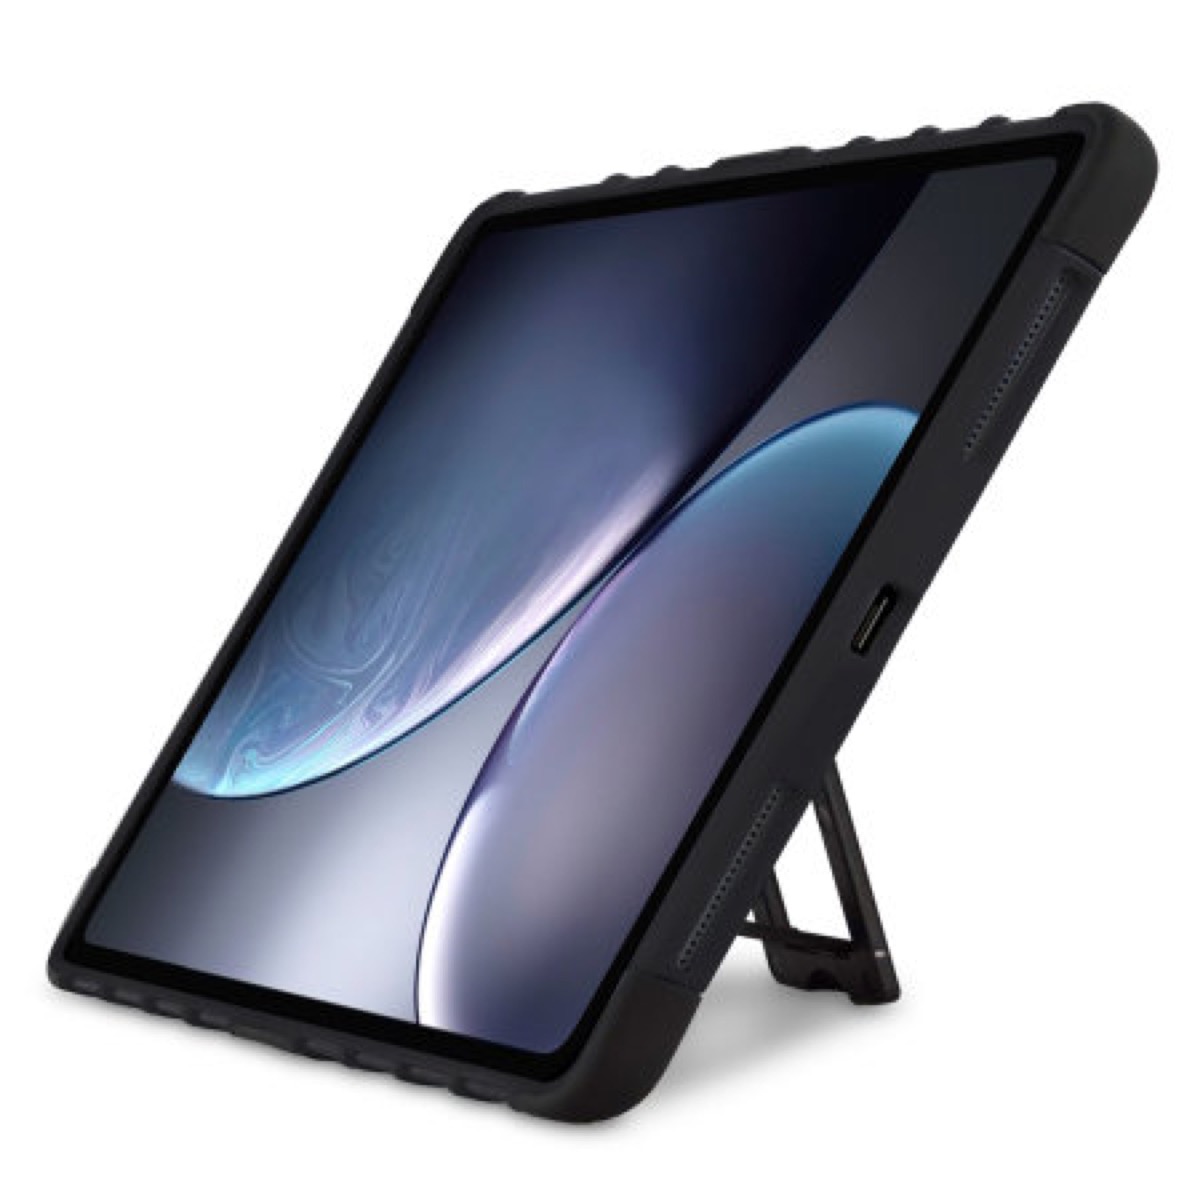 iPad Pro 2018 con USB-C, la conferma da una custodia